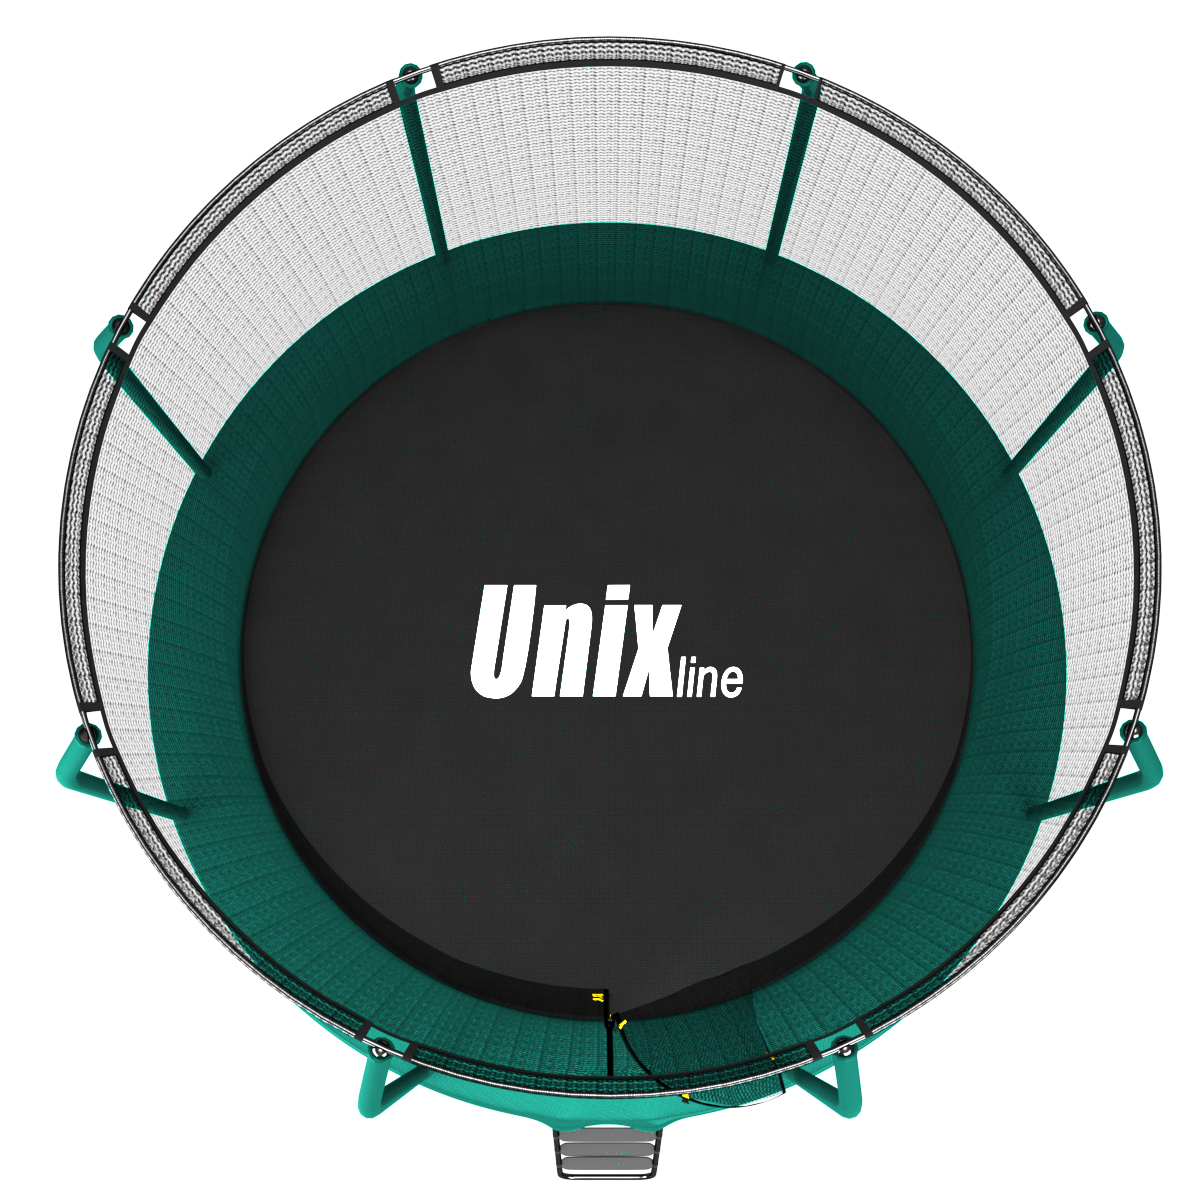 Батут UNIX line 8 ft SUPREME (green)